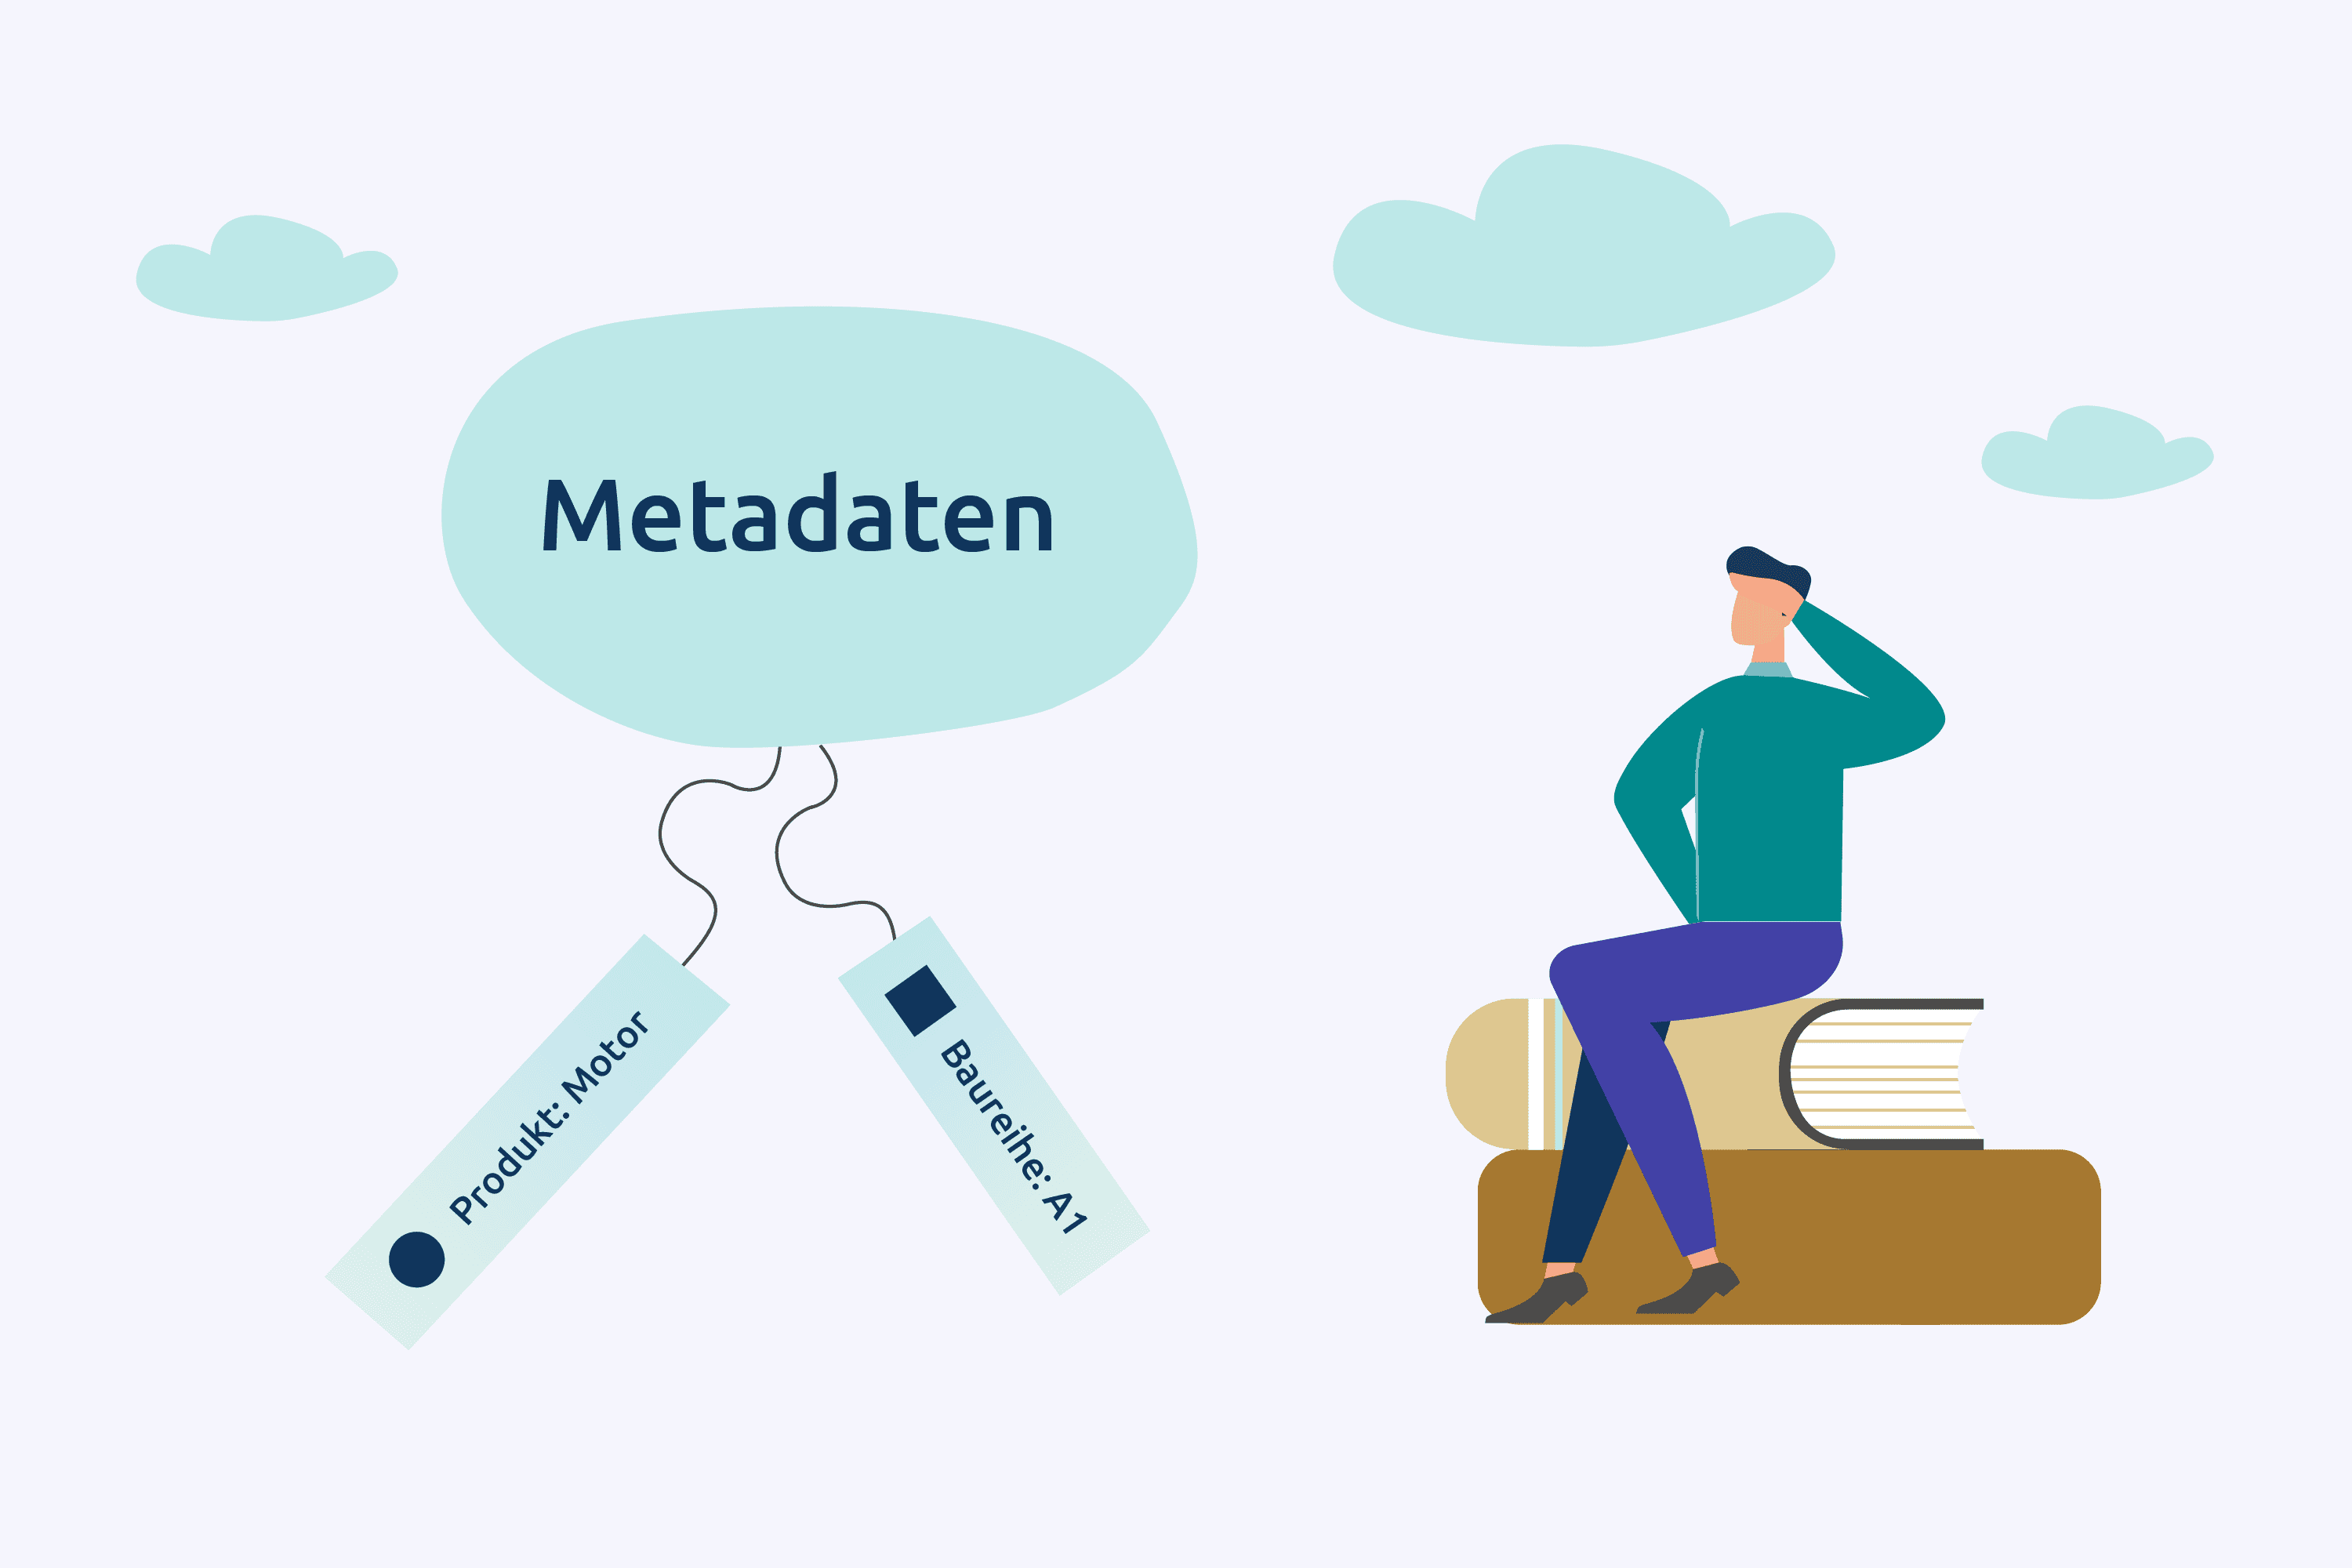 Metadaten - Endlich eine einfache Definition!